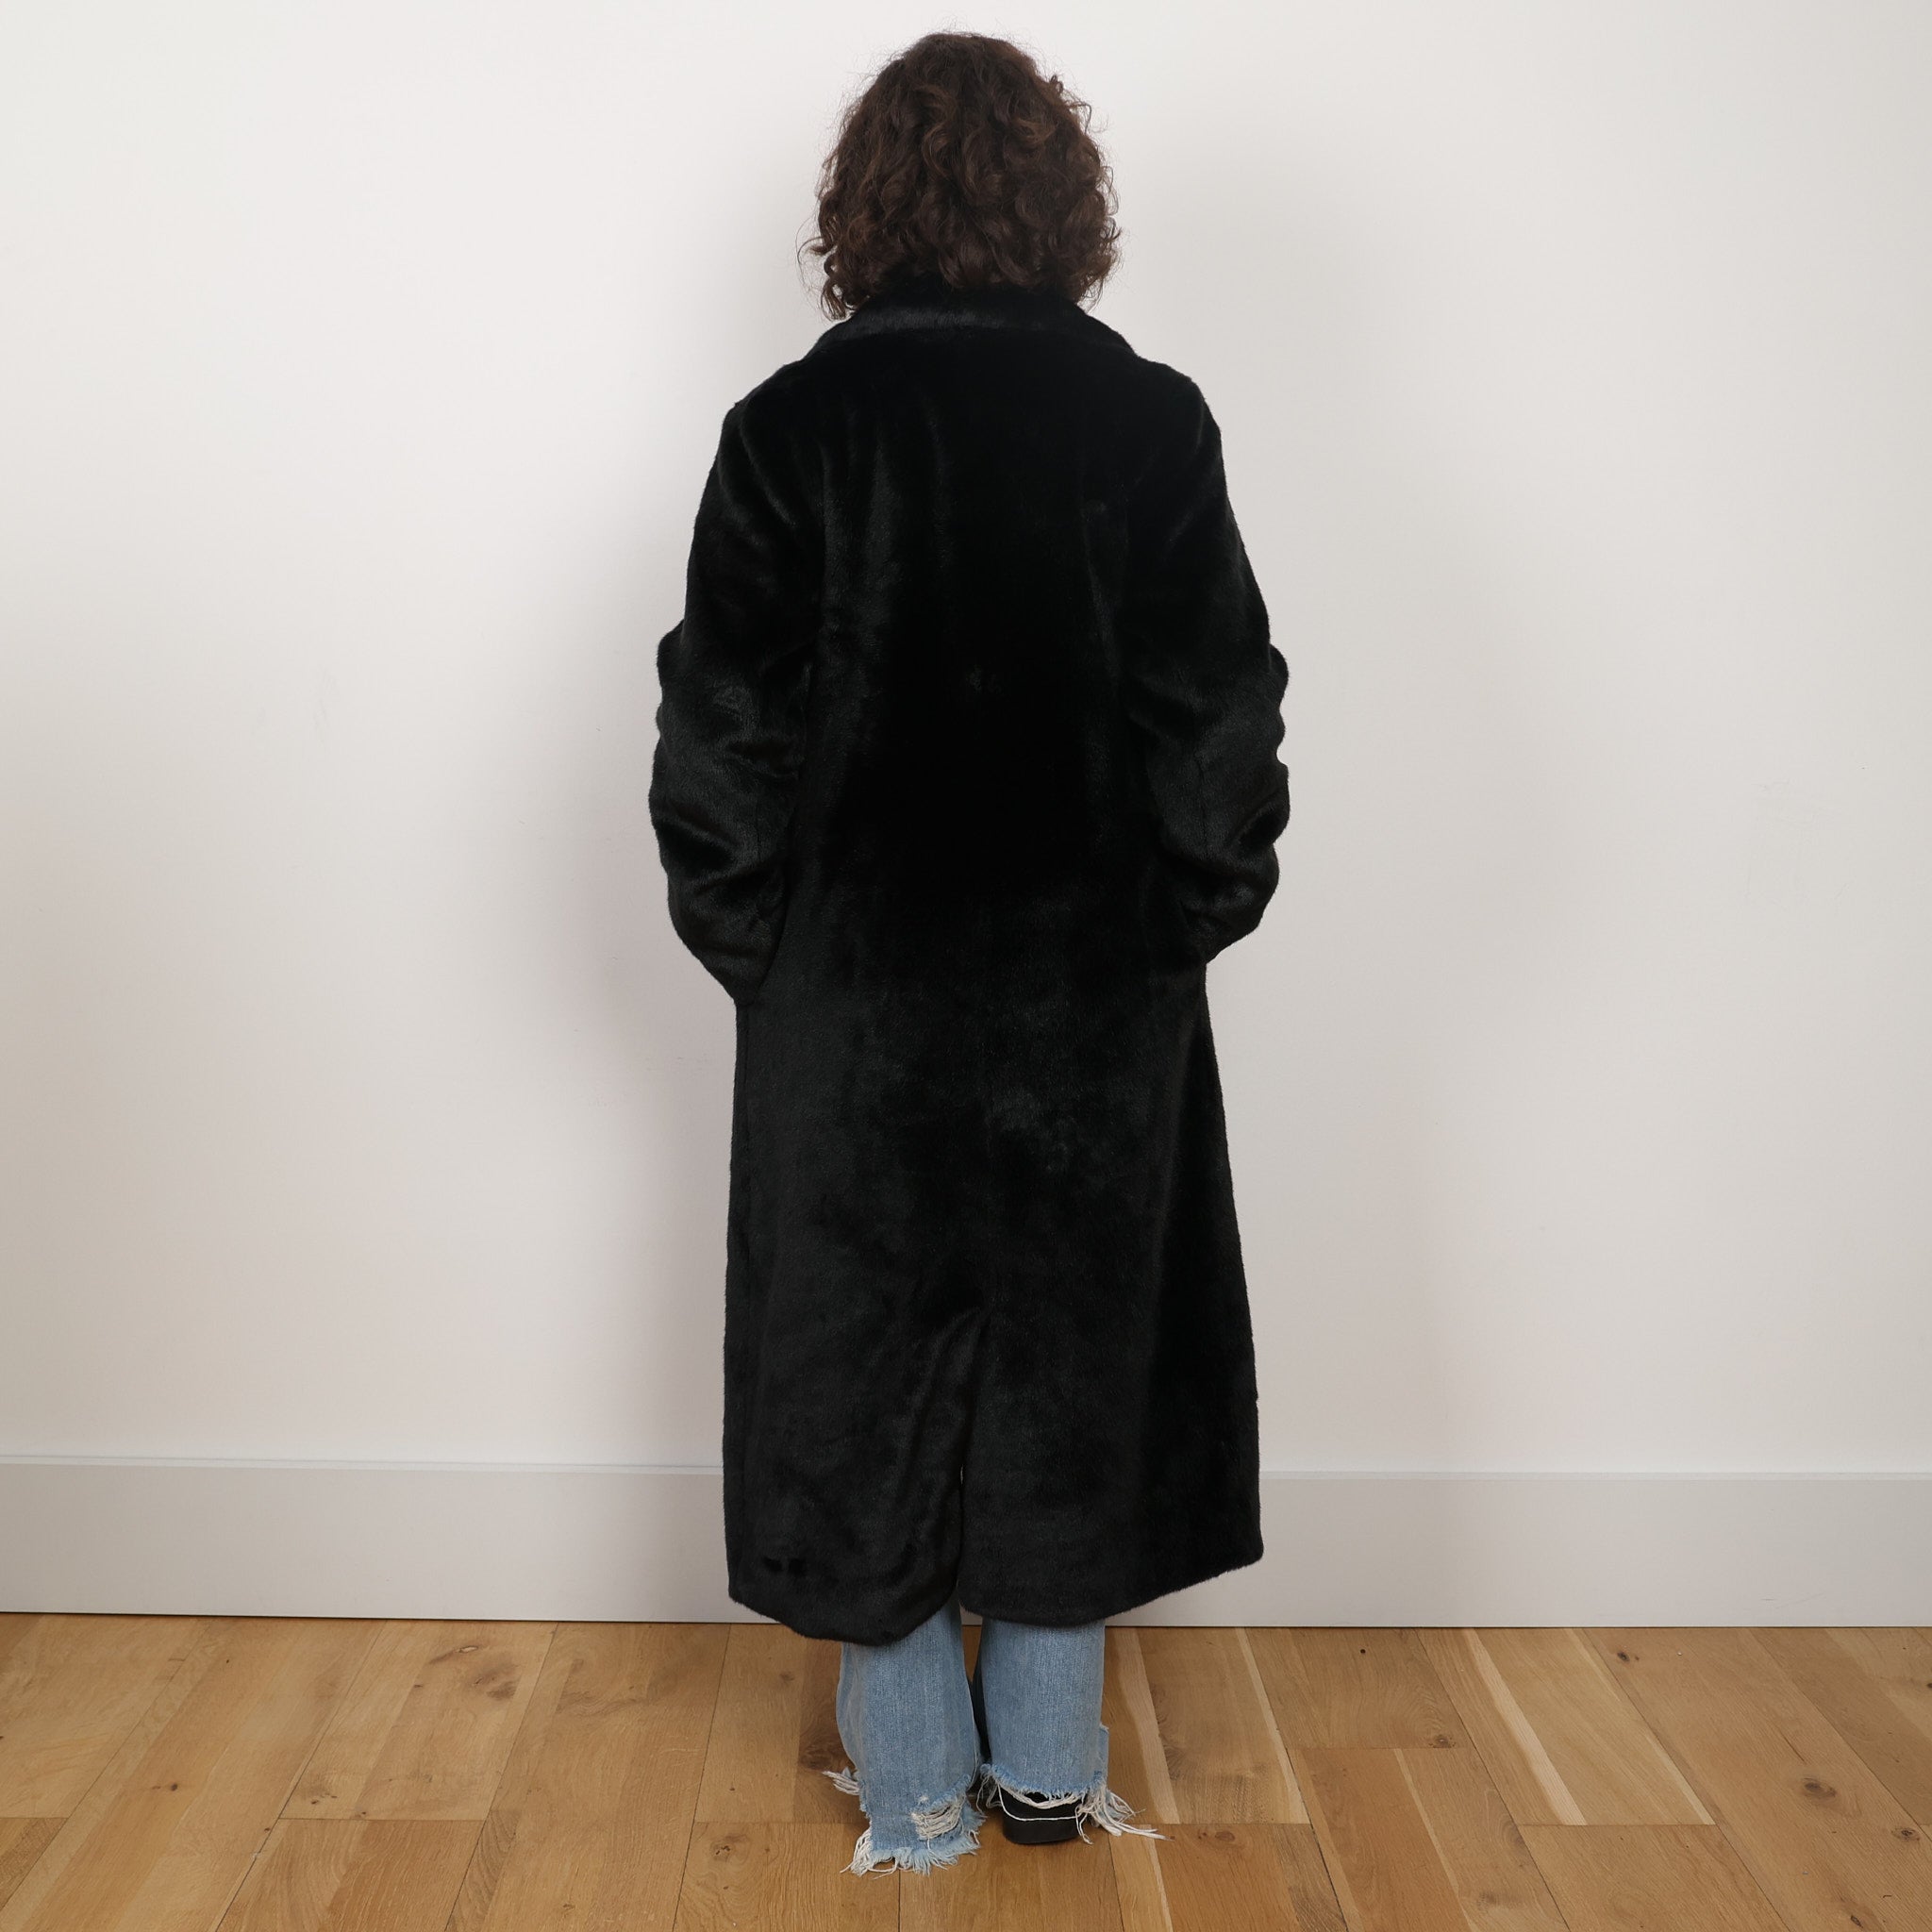 Coat, UK Size 8